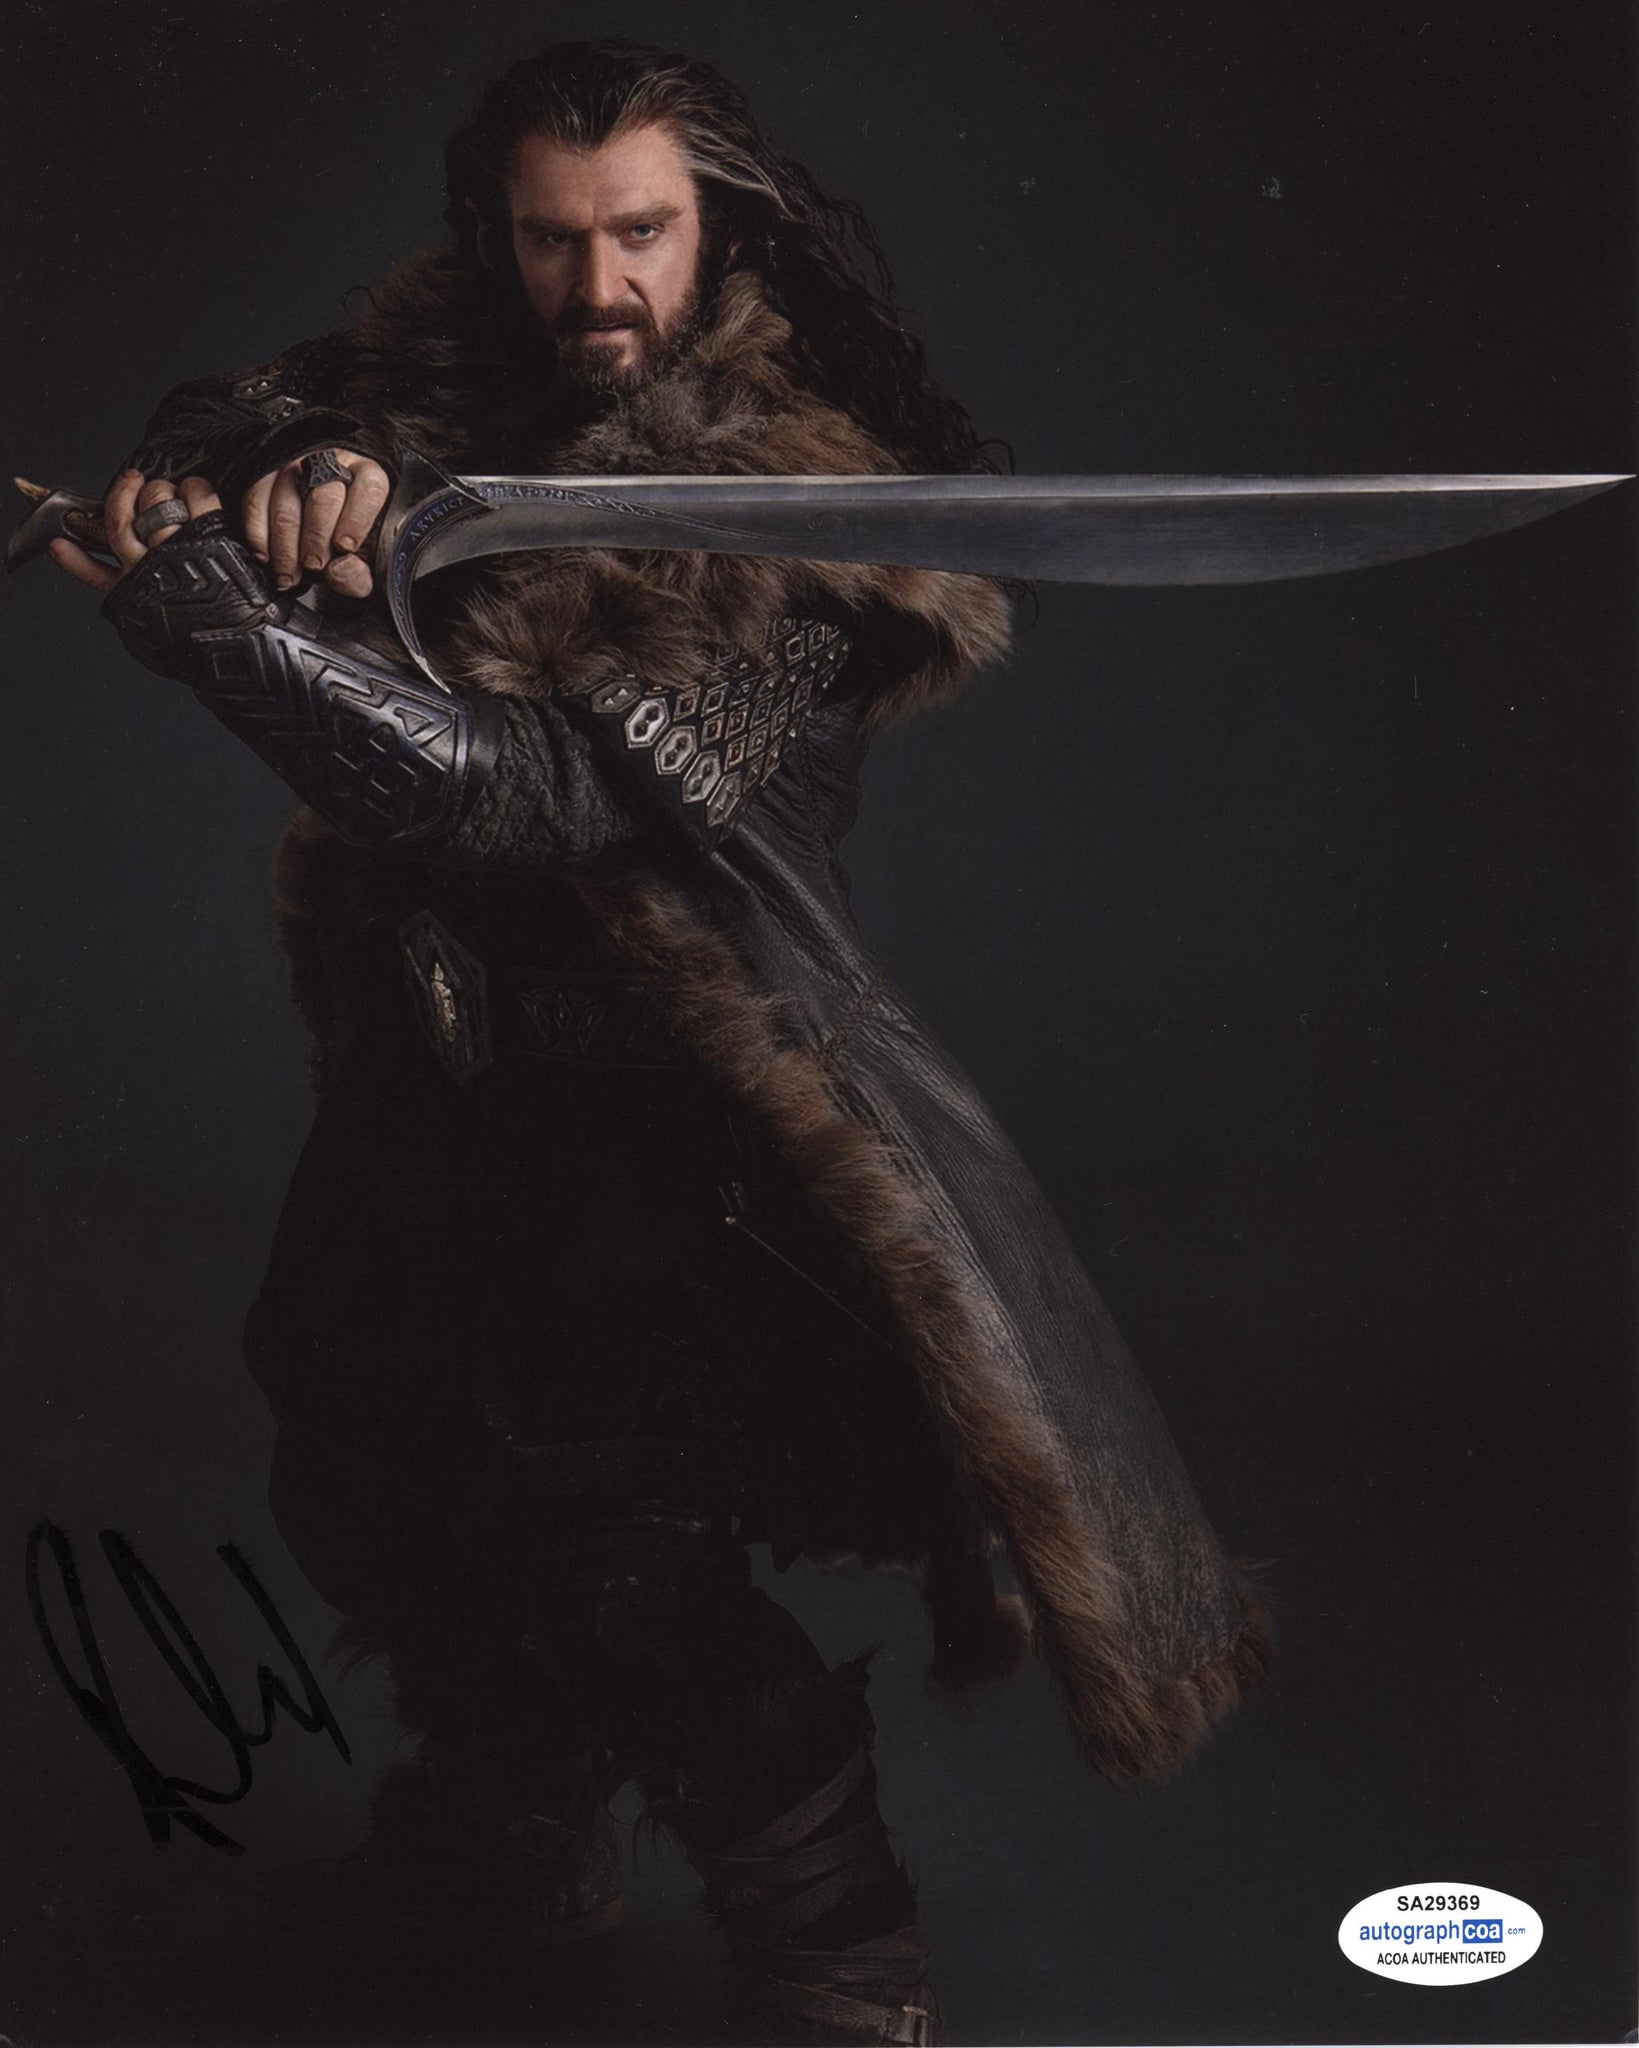 Richard Armitage The Hobbit Signed Autograph 8x10 Photo ACOA #7 - Outlaw Hobbies Authentic Autographs